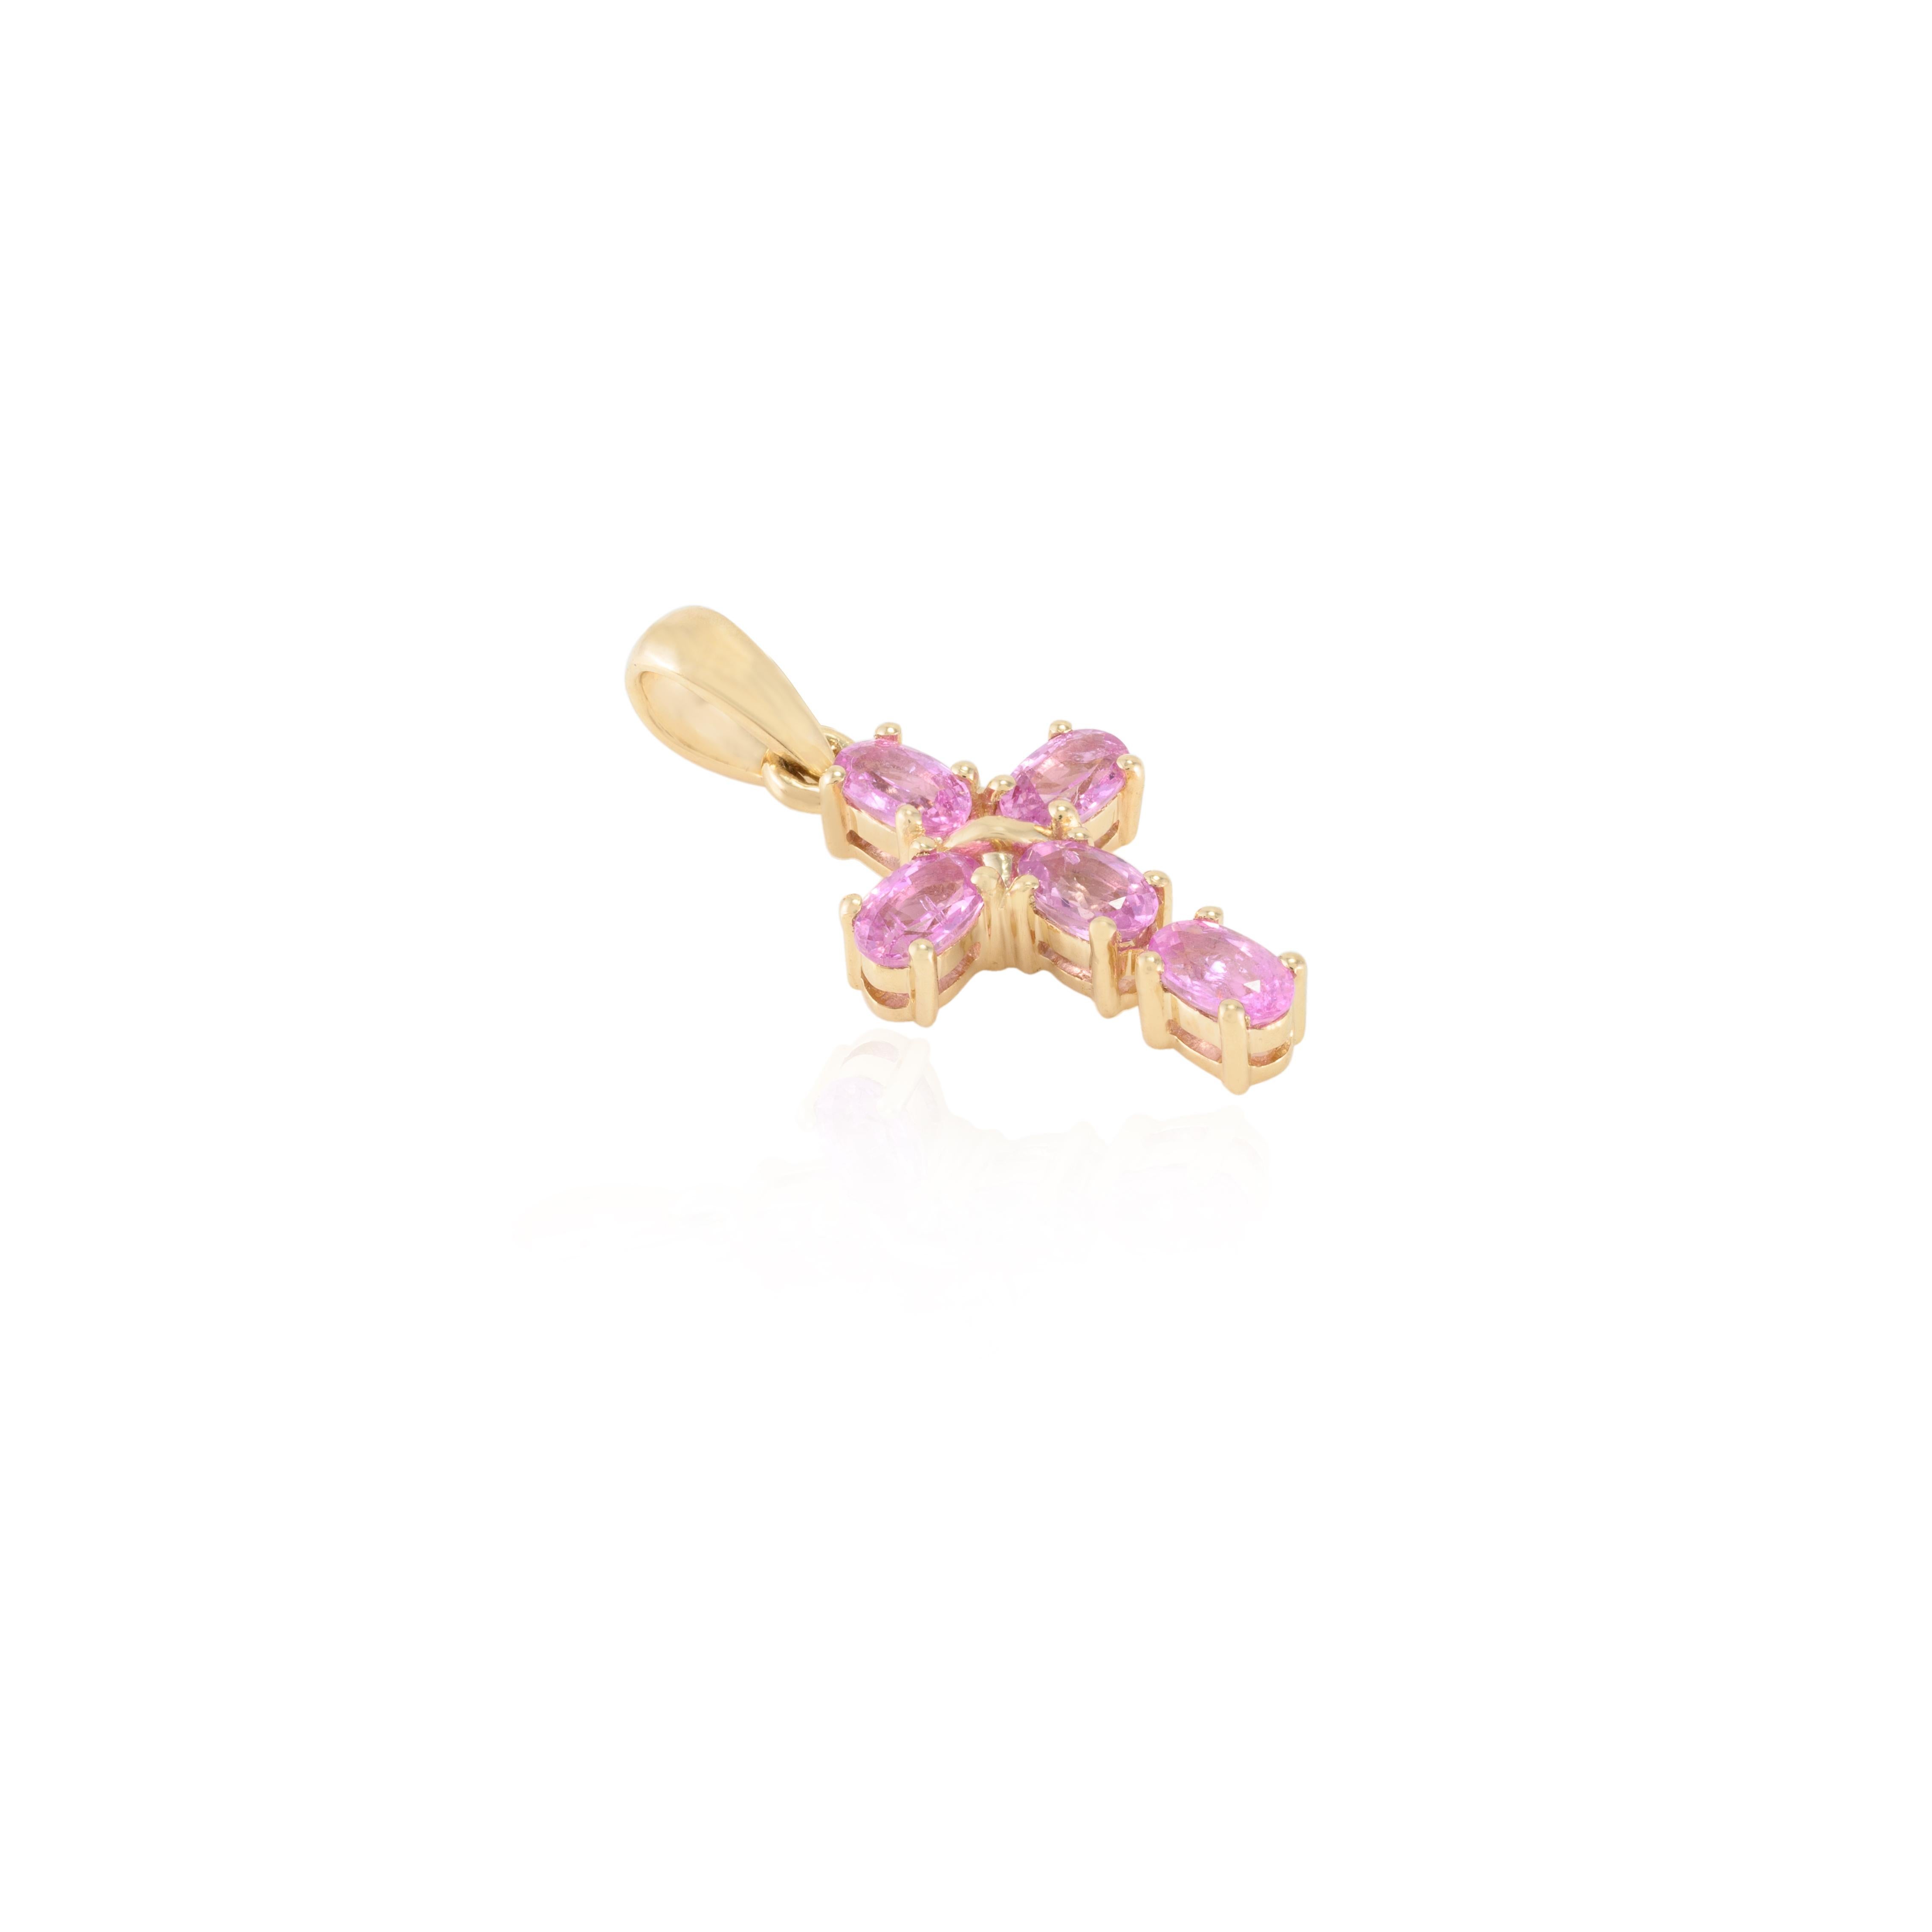 Kreuzanhänger mit natürlichem rosa Saphir aus 14 Karat Gold, besetzt mit einem rosa Saphir im Ovalschliff. Dieses atemberaubende Schmuckstück wertet einen Freizeitlook oder ein elegantes Outfit sofort auf. 
Saphir fördert die Konzentration und baut